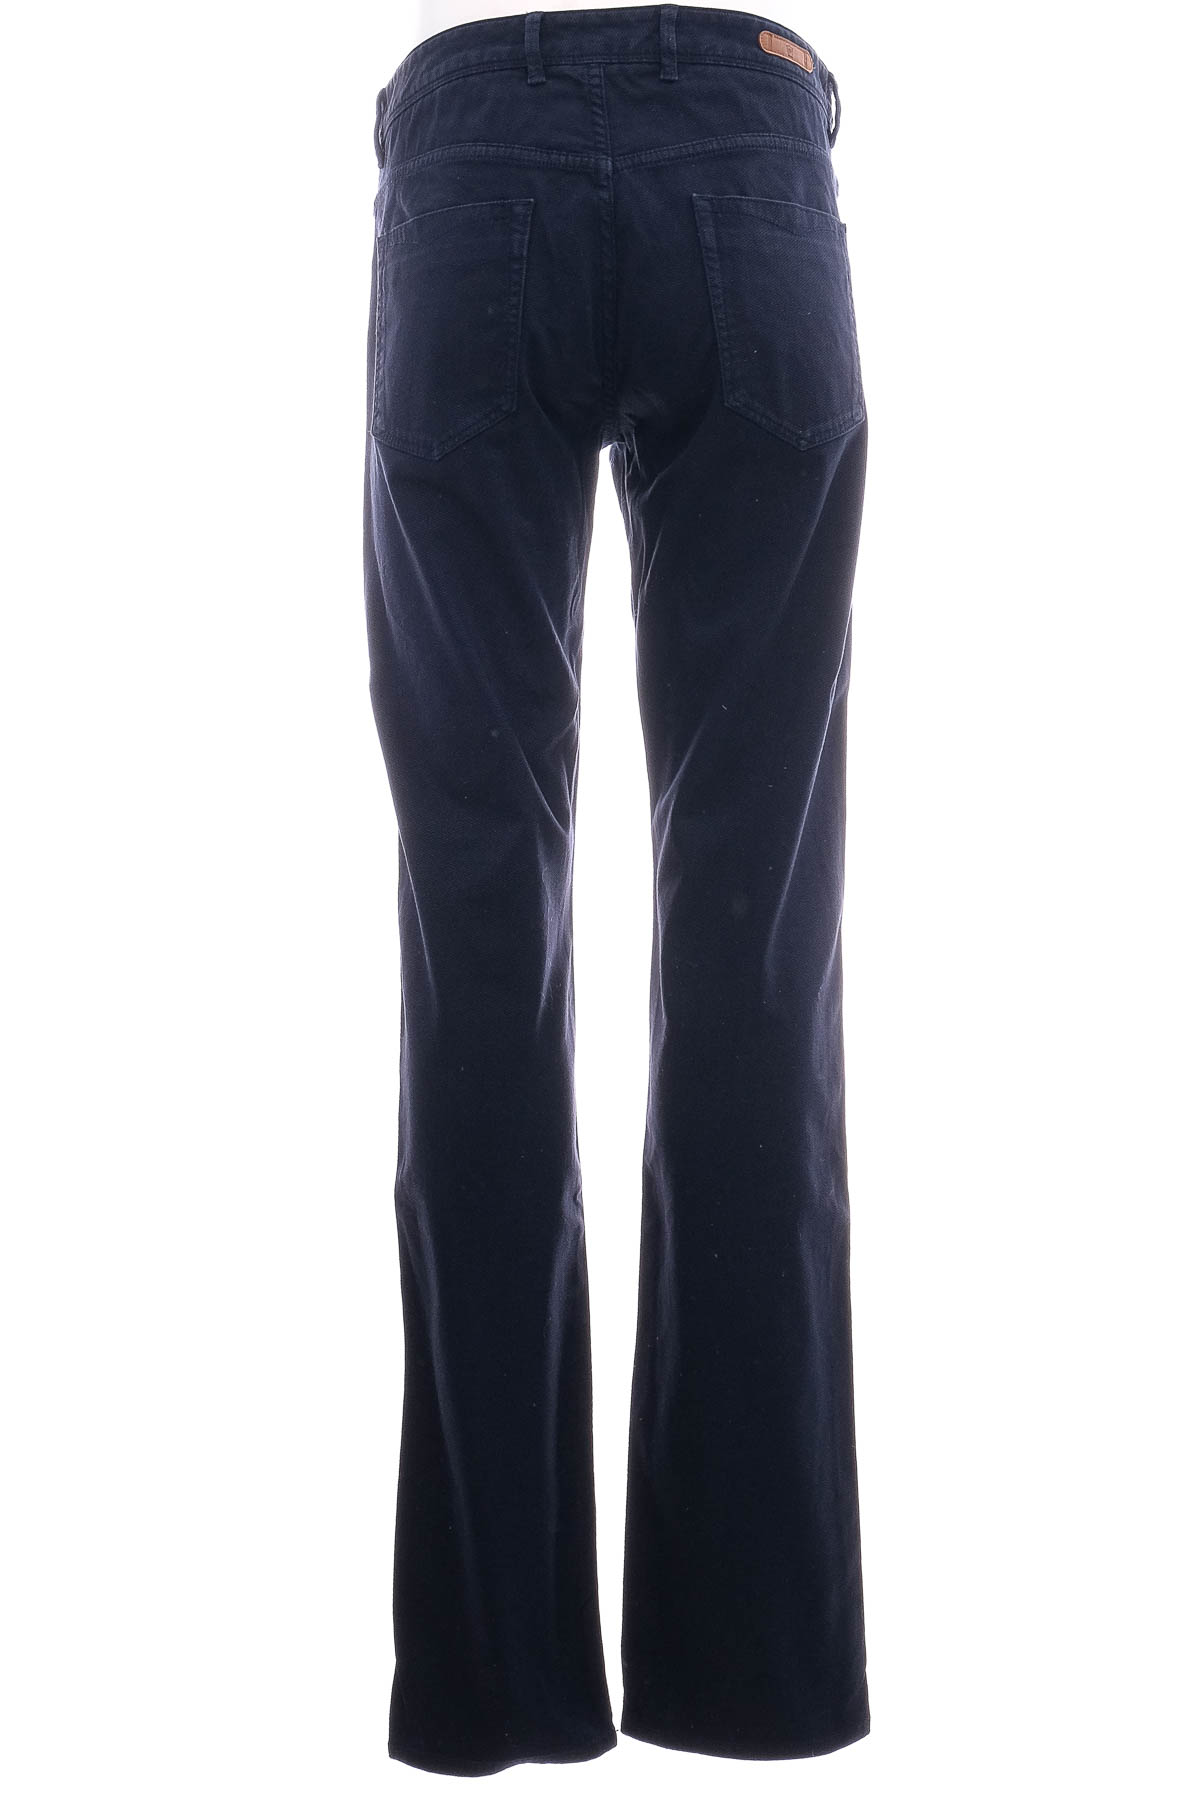 Jeans pentru bărbăți - Massimo Dutti - 1